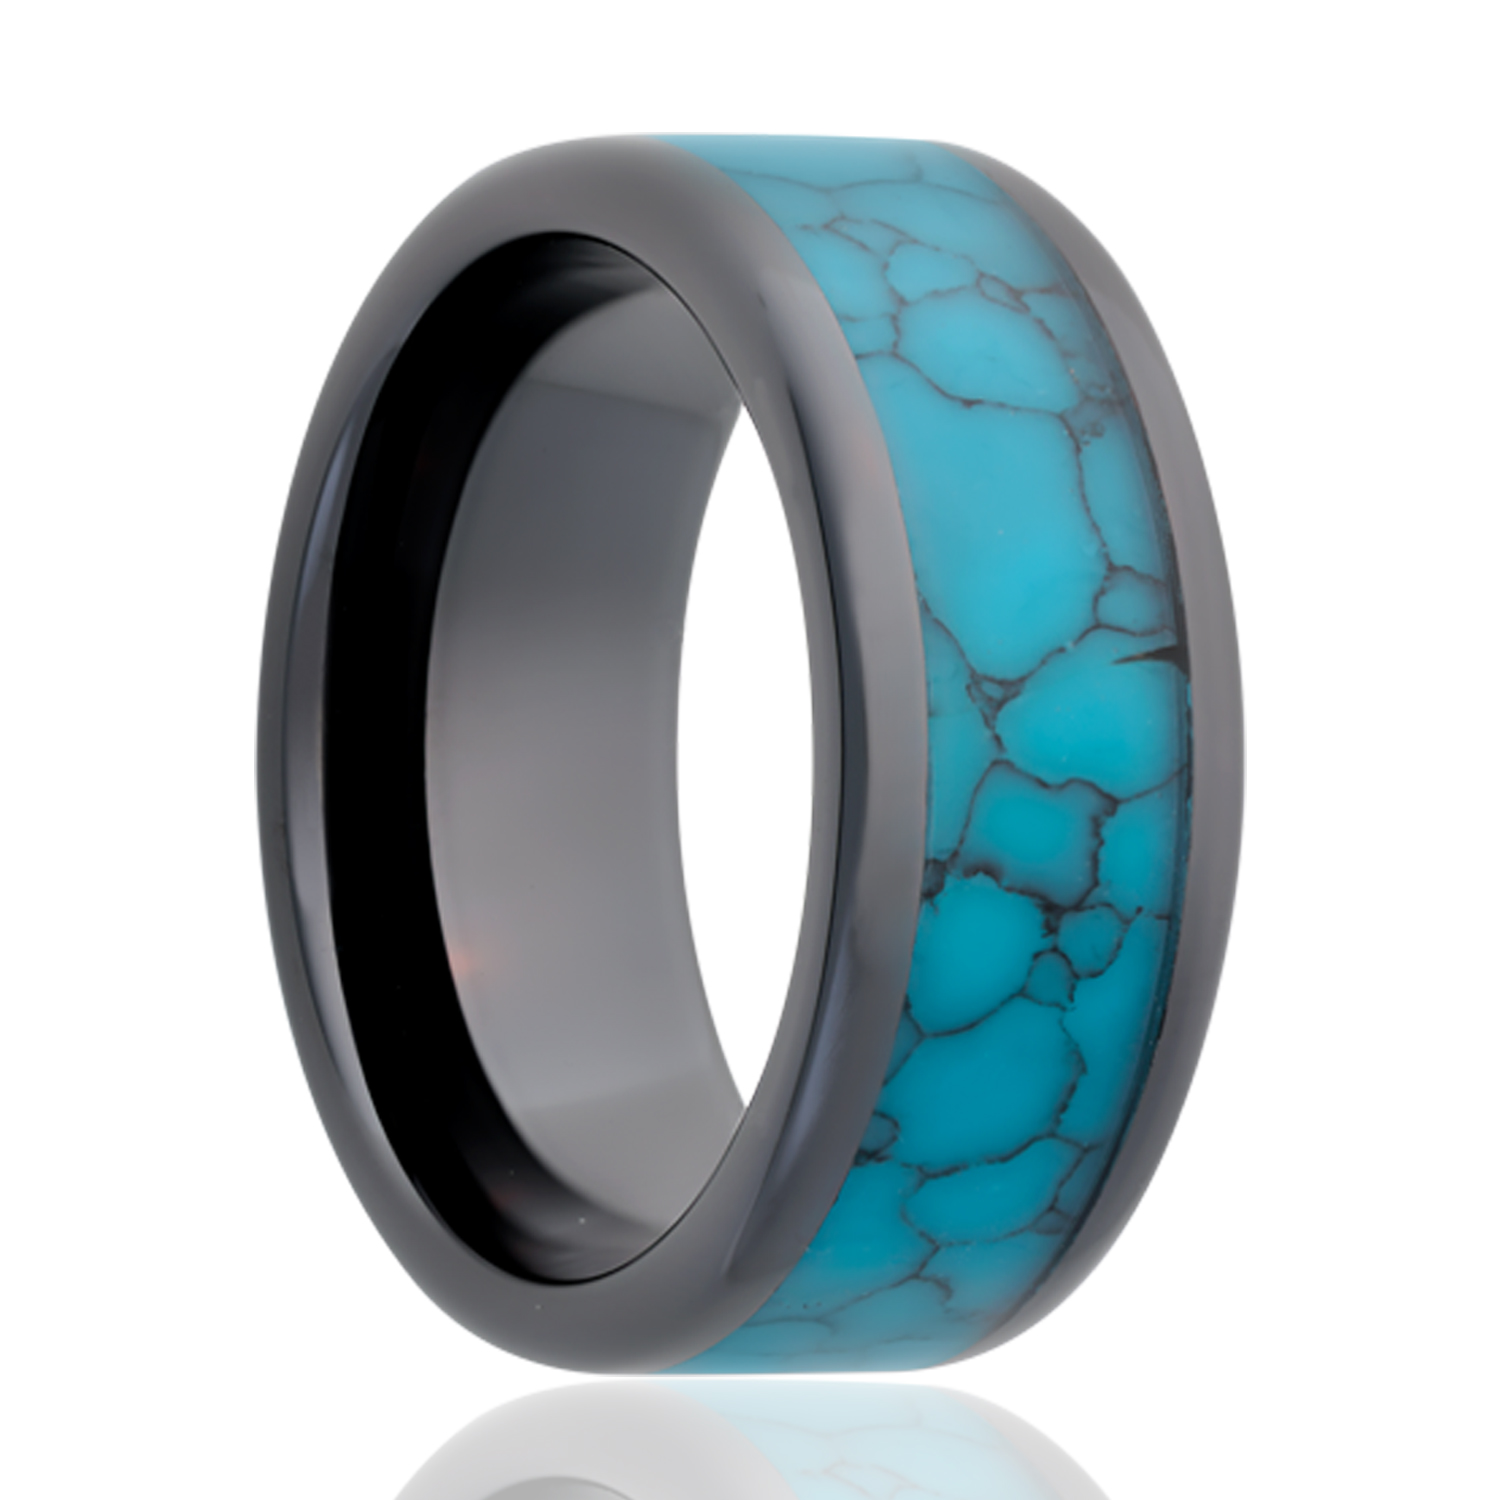 Ceramic Ring